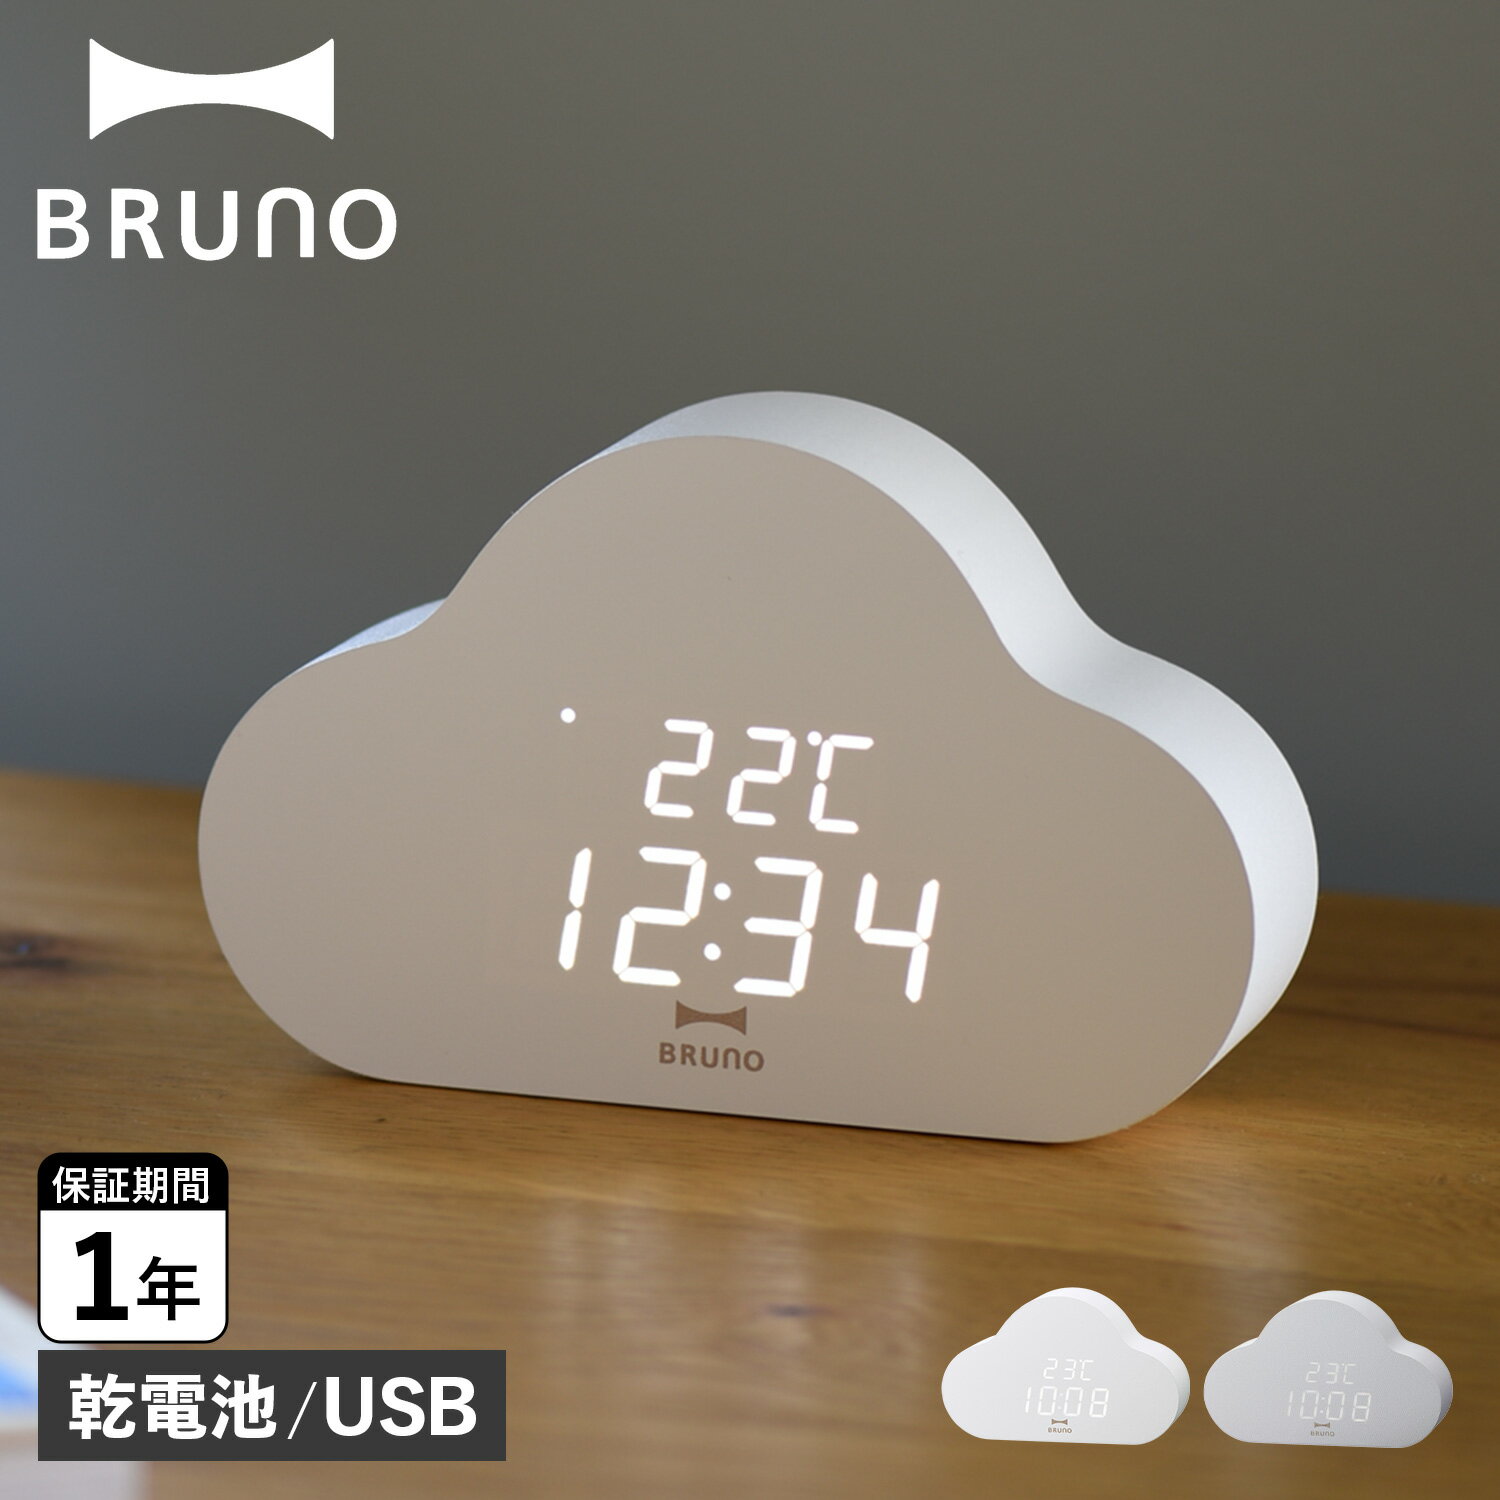 BRUNO ブルーノ 置時計 デジタル クラウドクロック CLOUD CLOCK ホワイト グレー 白 BCA030